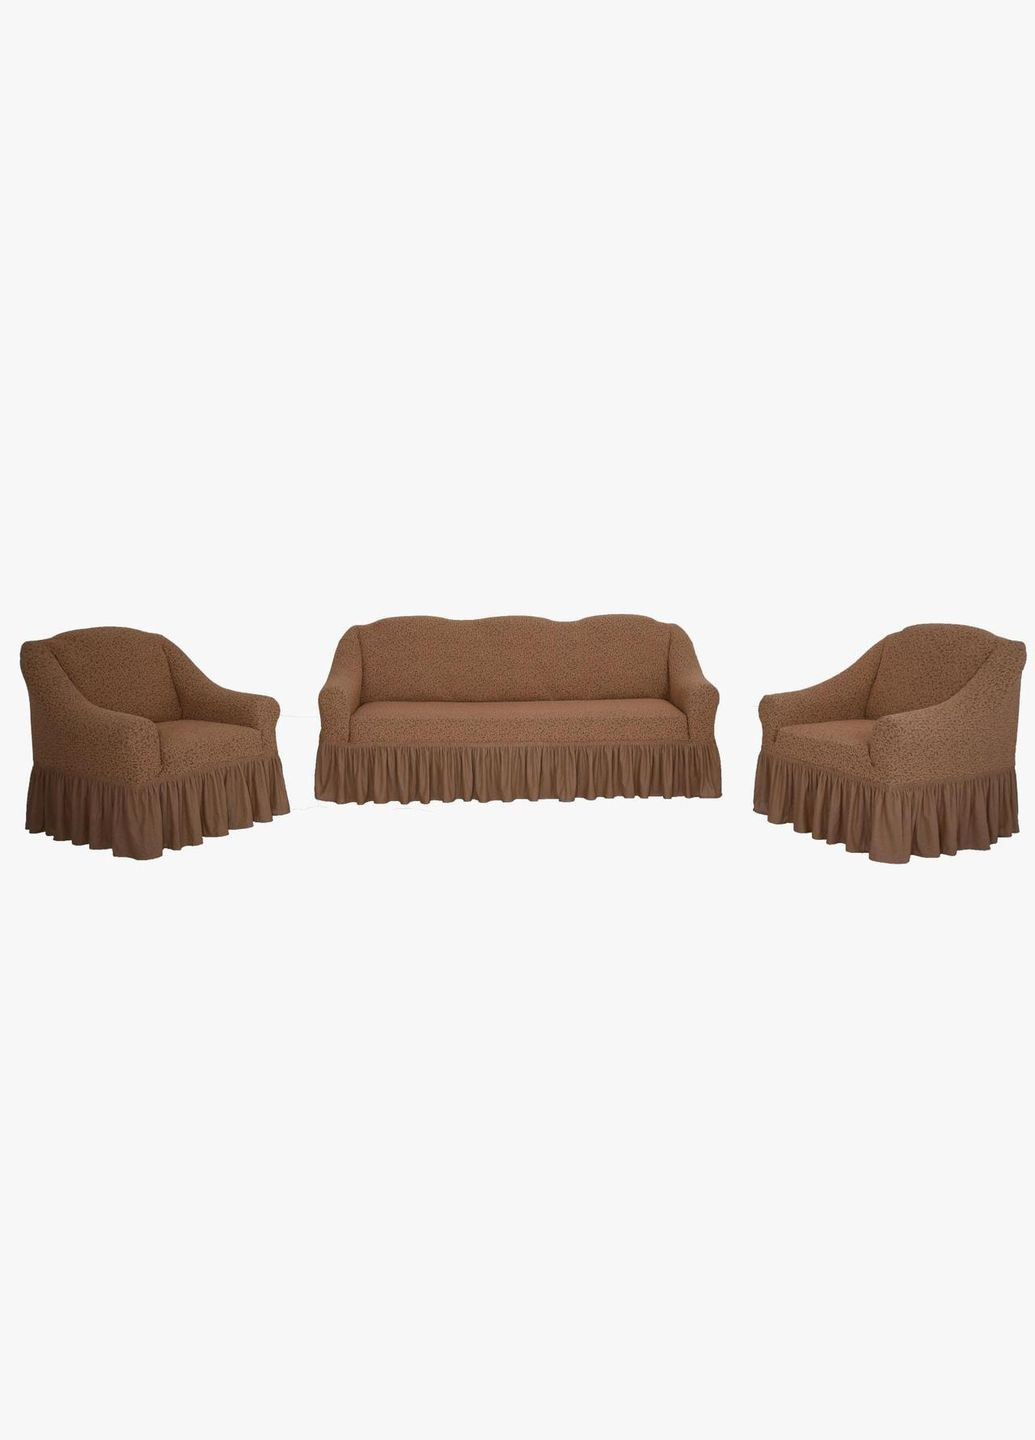 Чехлы натяжные на диван 3-х местный и два кресла Жаккард Ж25 (универсальные) Светлый Бежевый Venera (268547789)